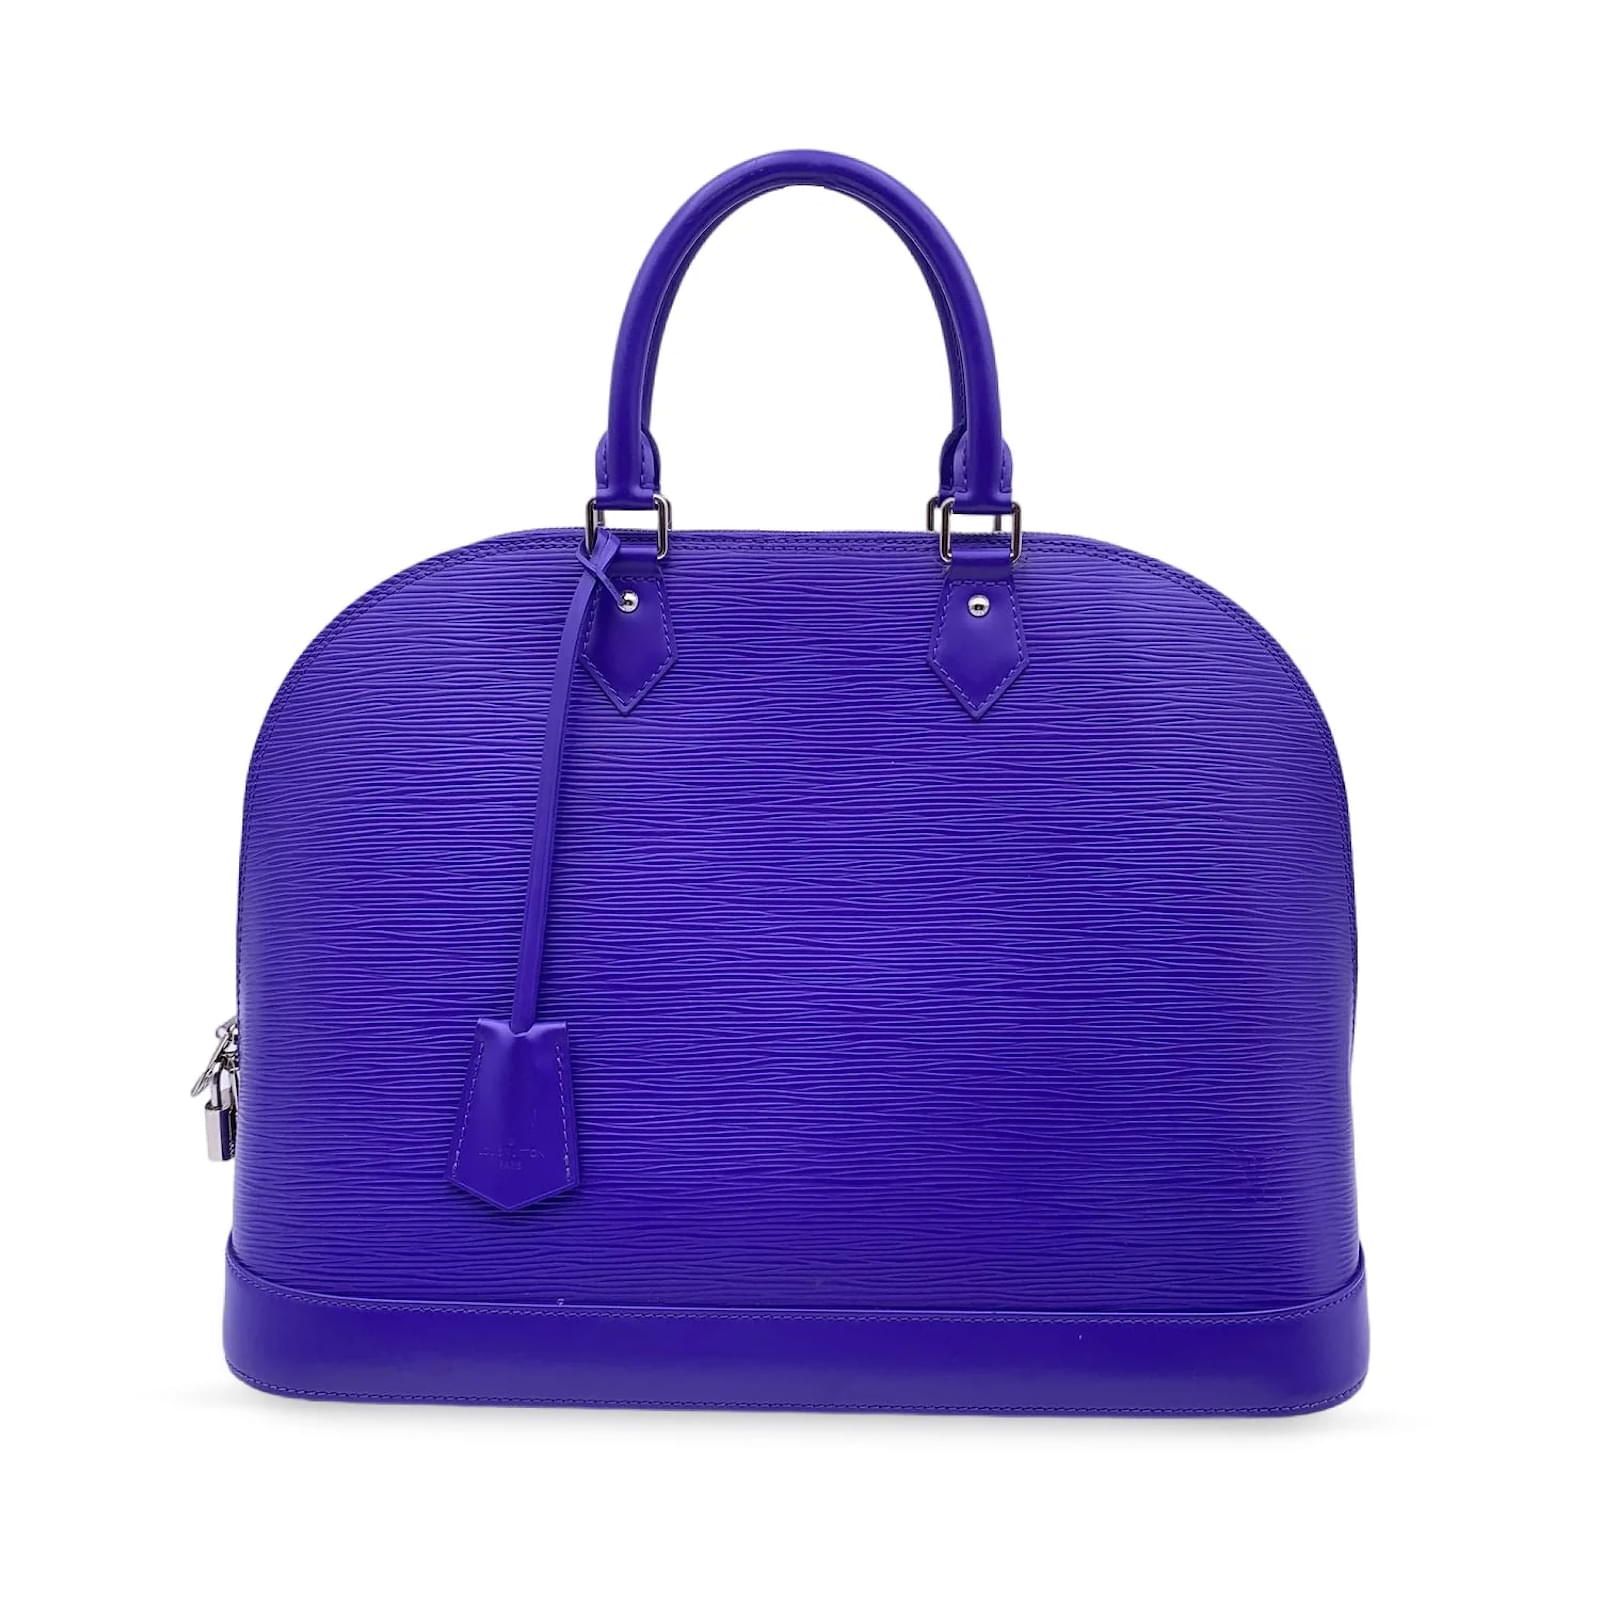 Handbags Louis Vuitton Louis Vuitton Handbag Alma